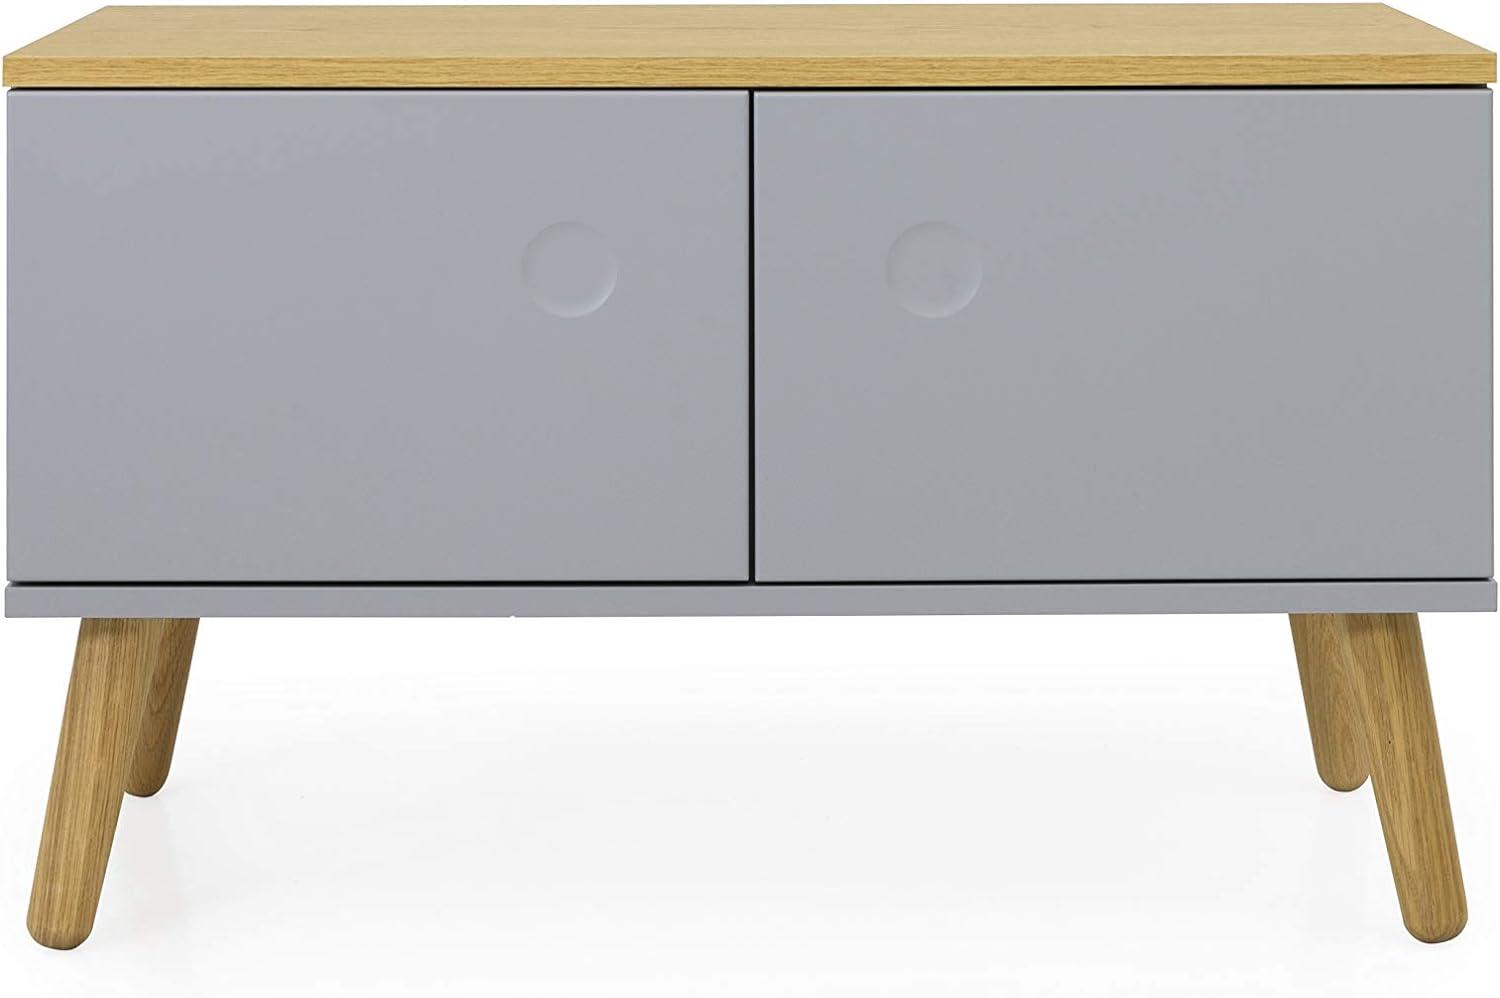 TENZO DOT 2 türen Sitzbank, Engineered Wood, Grau und Eiche, H48 B79 T37 cm Bild 1